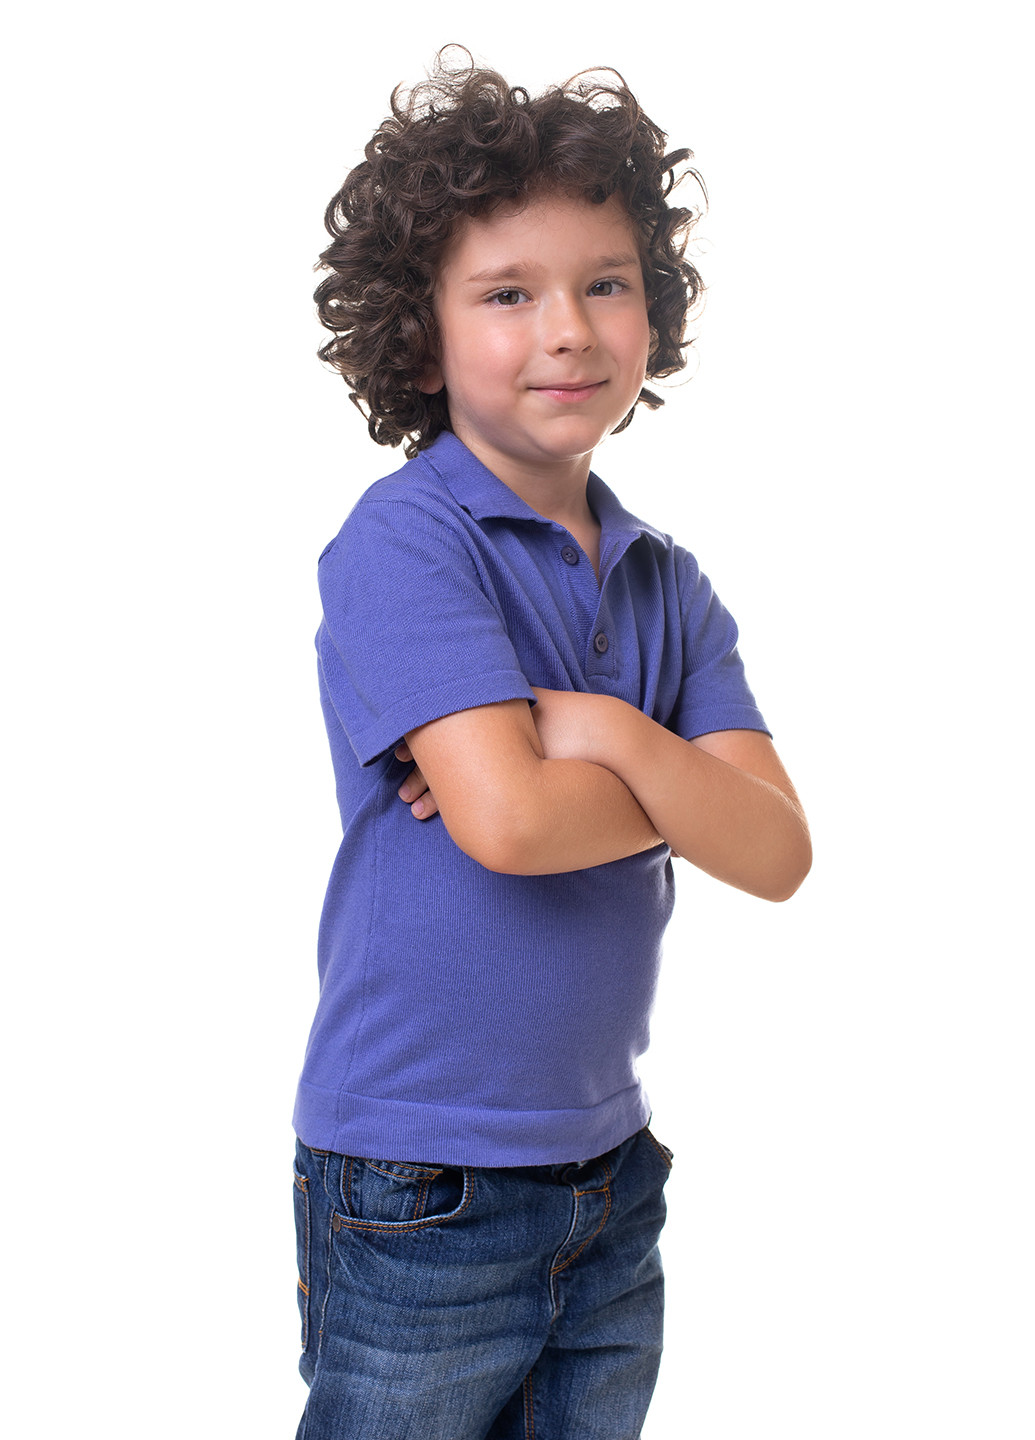 Фиолетовая летняя футболка Bakhur Футболка для мальчика